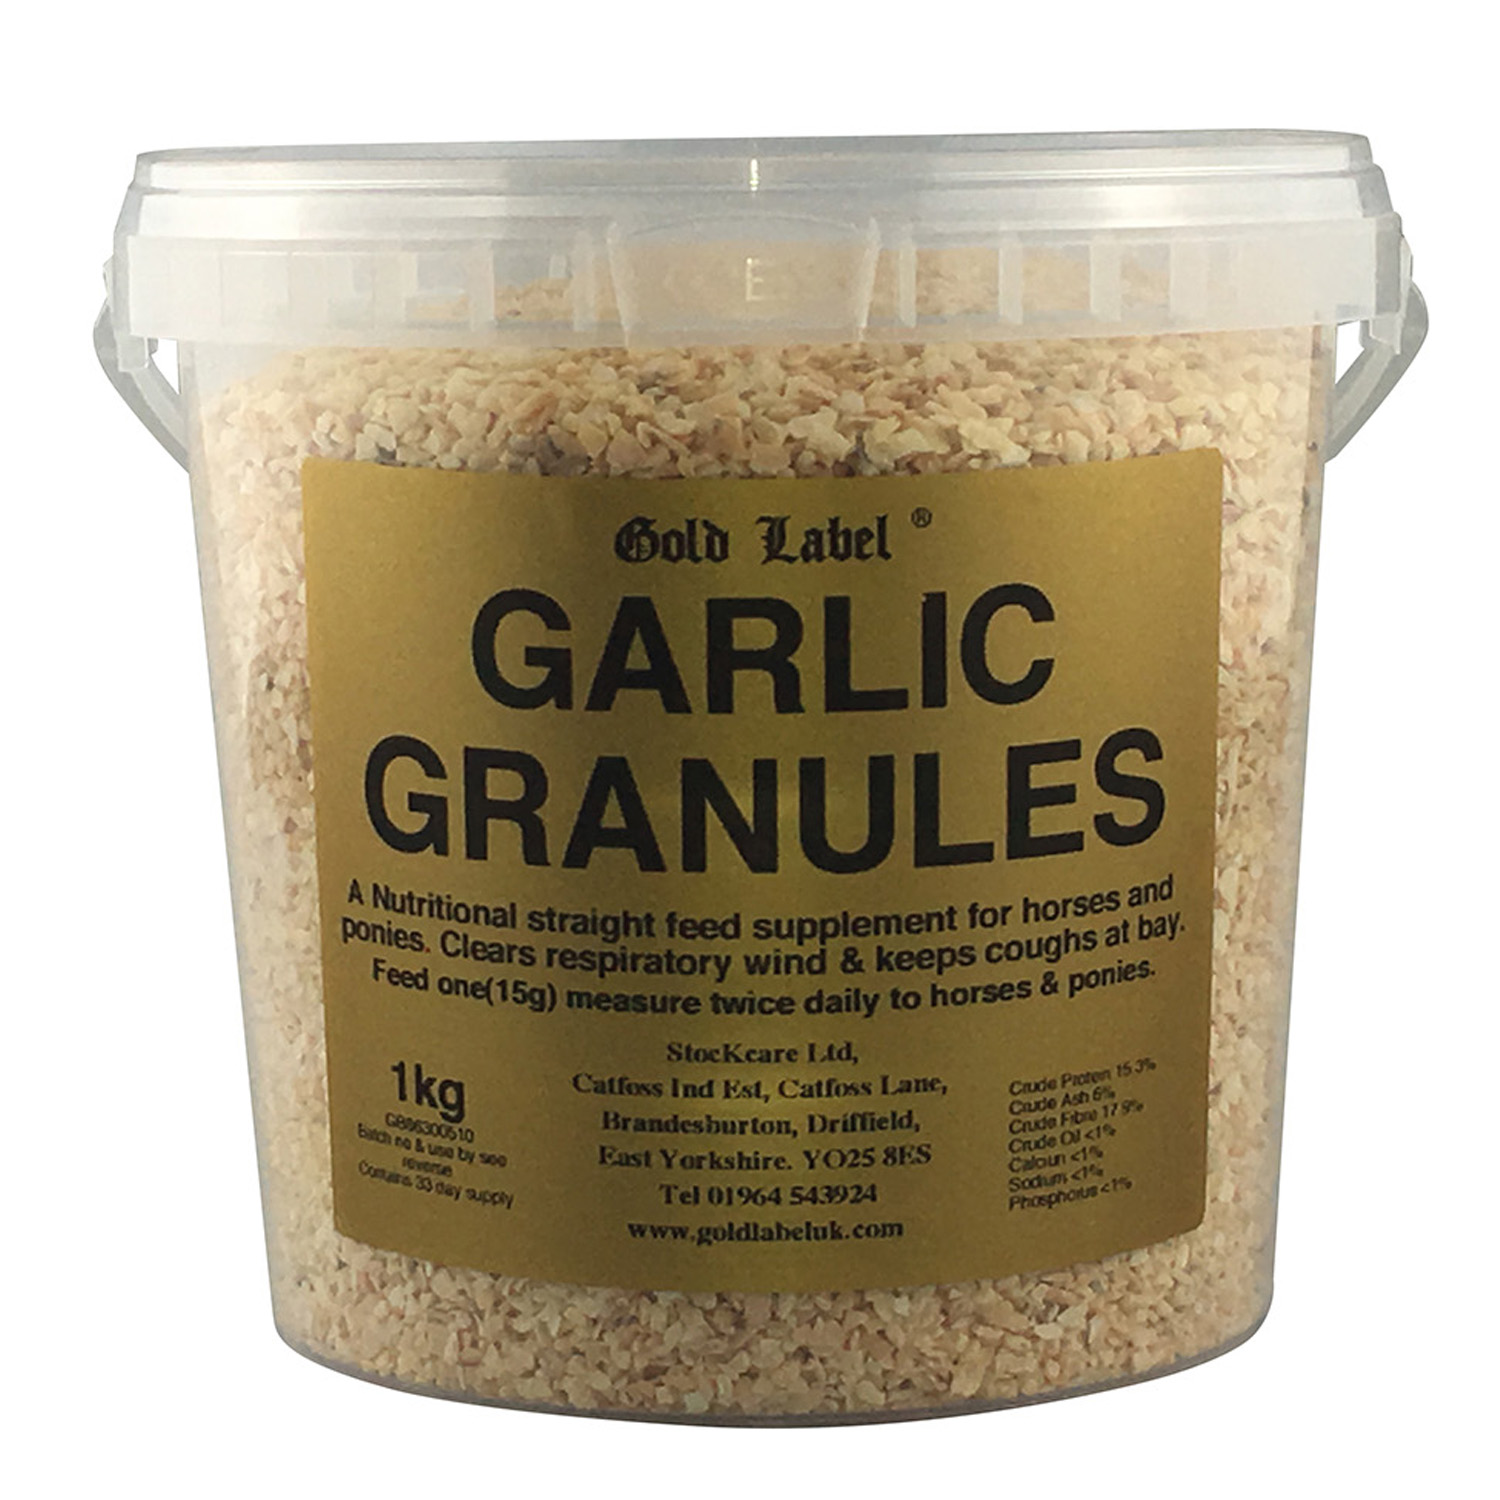 GOLD LABEL GARLIC GRANULES 1 KG 1 KG